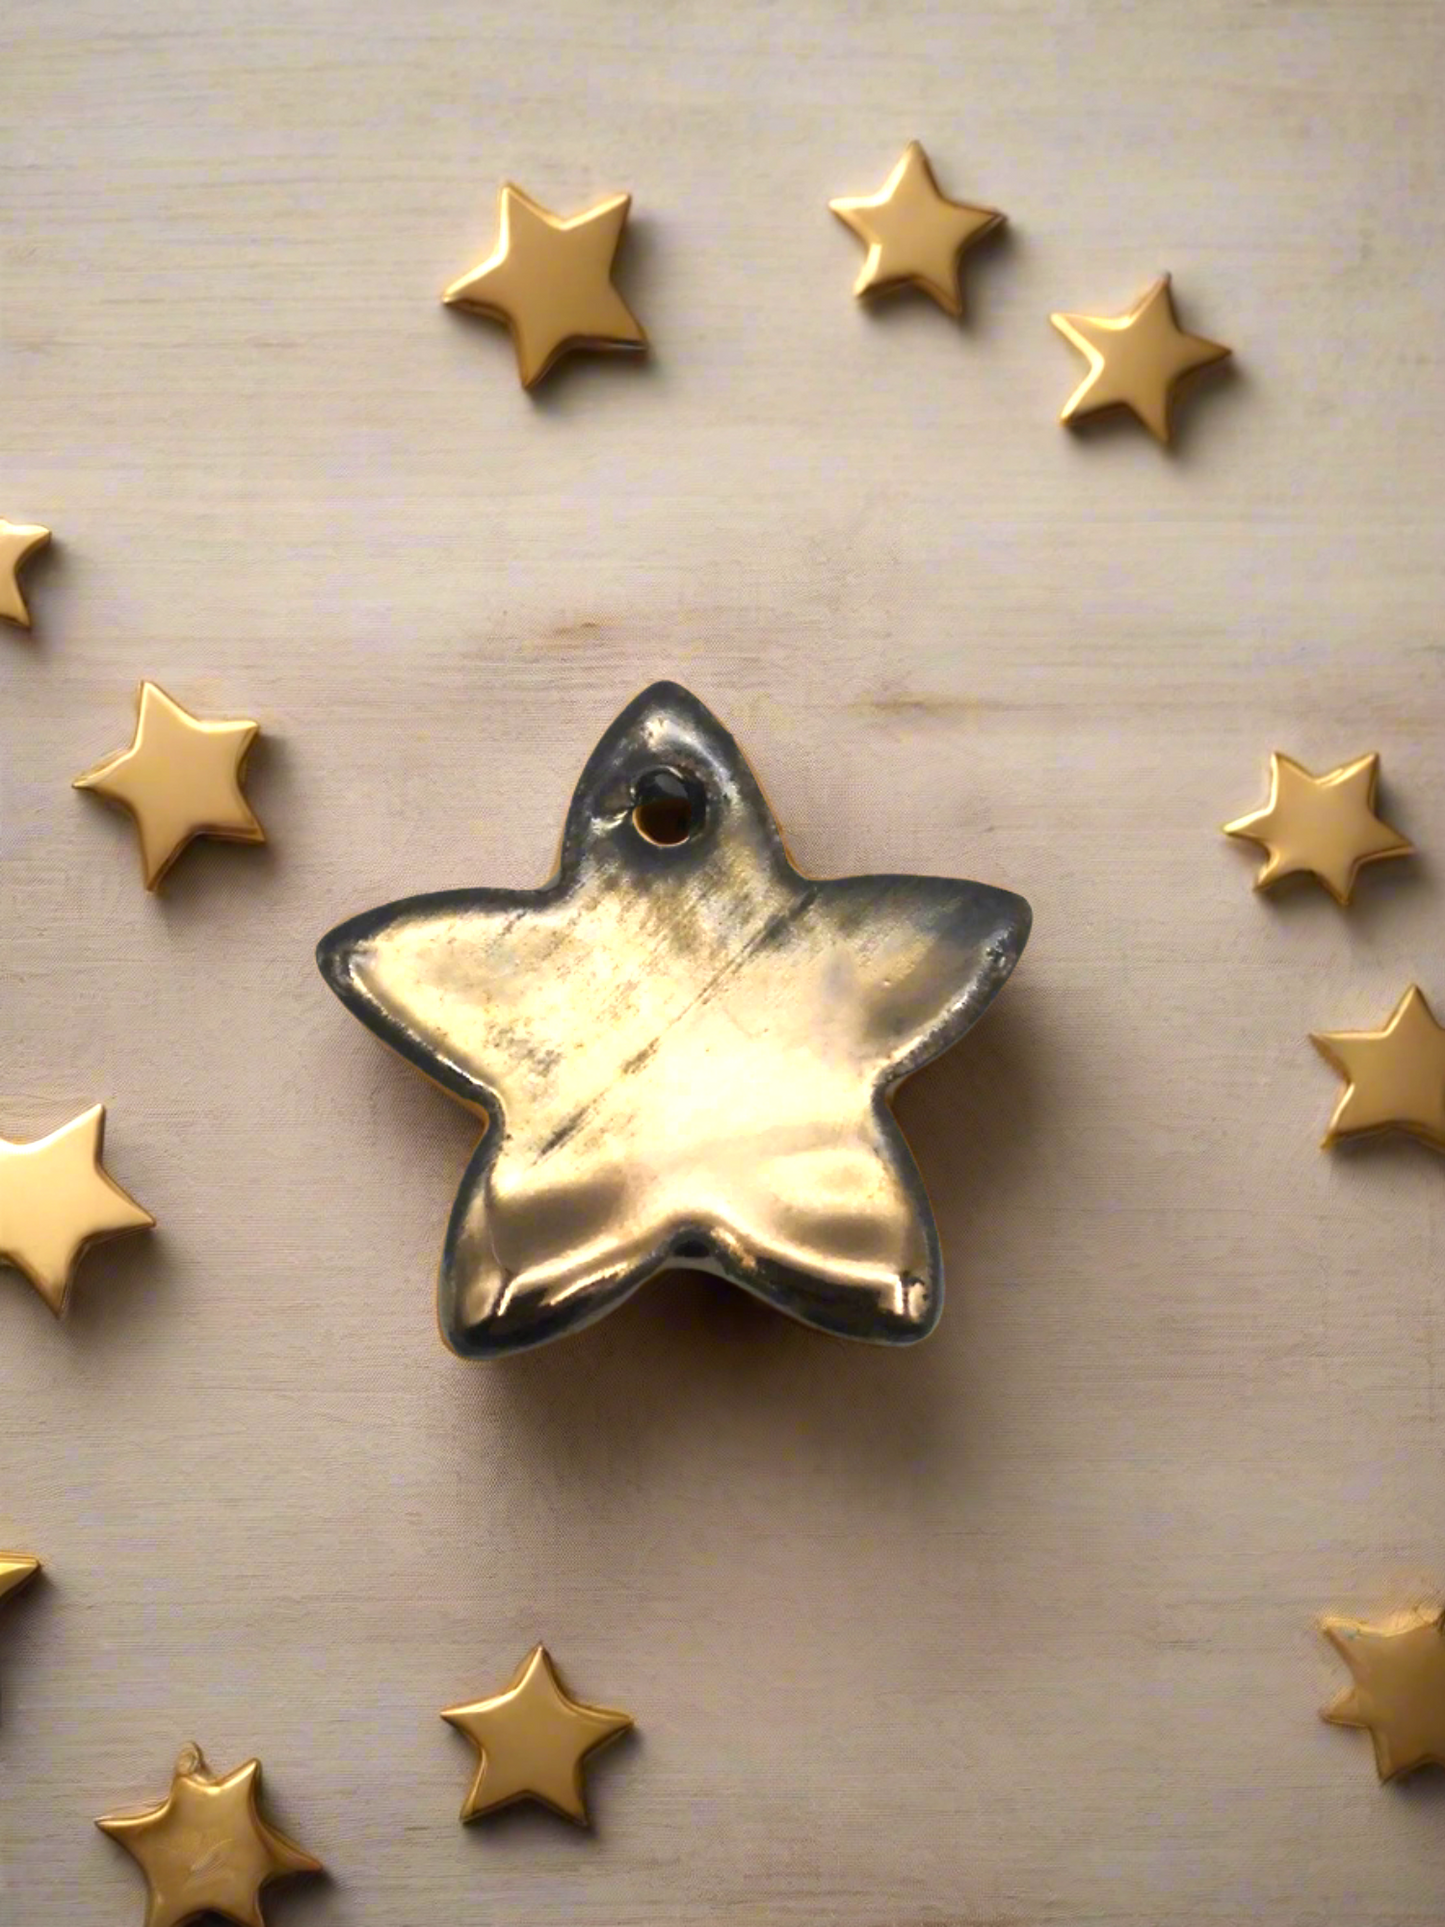 1 pieza de etiquetas de regalo de estrella de cerámica hechas a mano para todas las ocasiones, adornos navideños de arcilla reutilizables, decoración del hogar celestial artesanal navideña, favores de fiesta